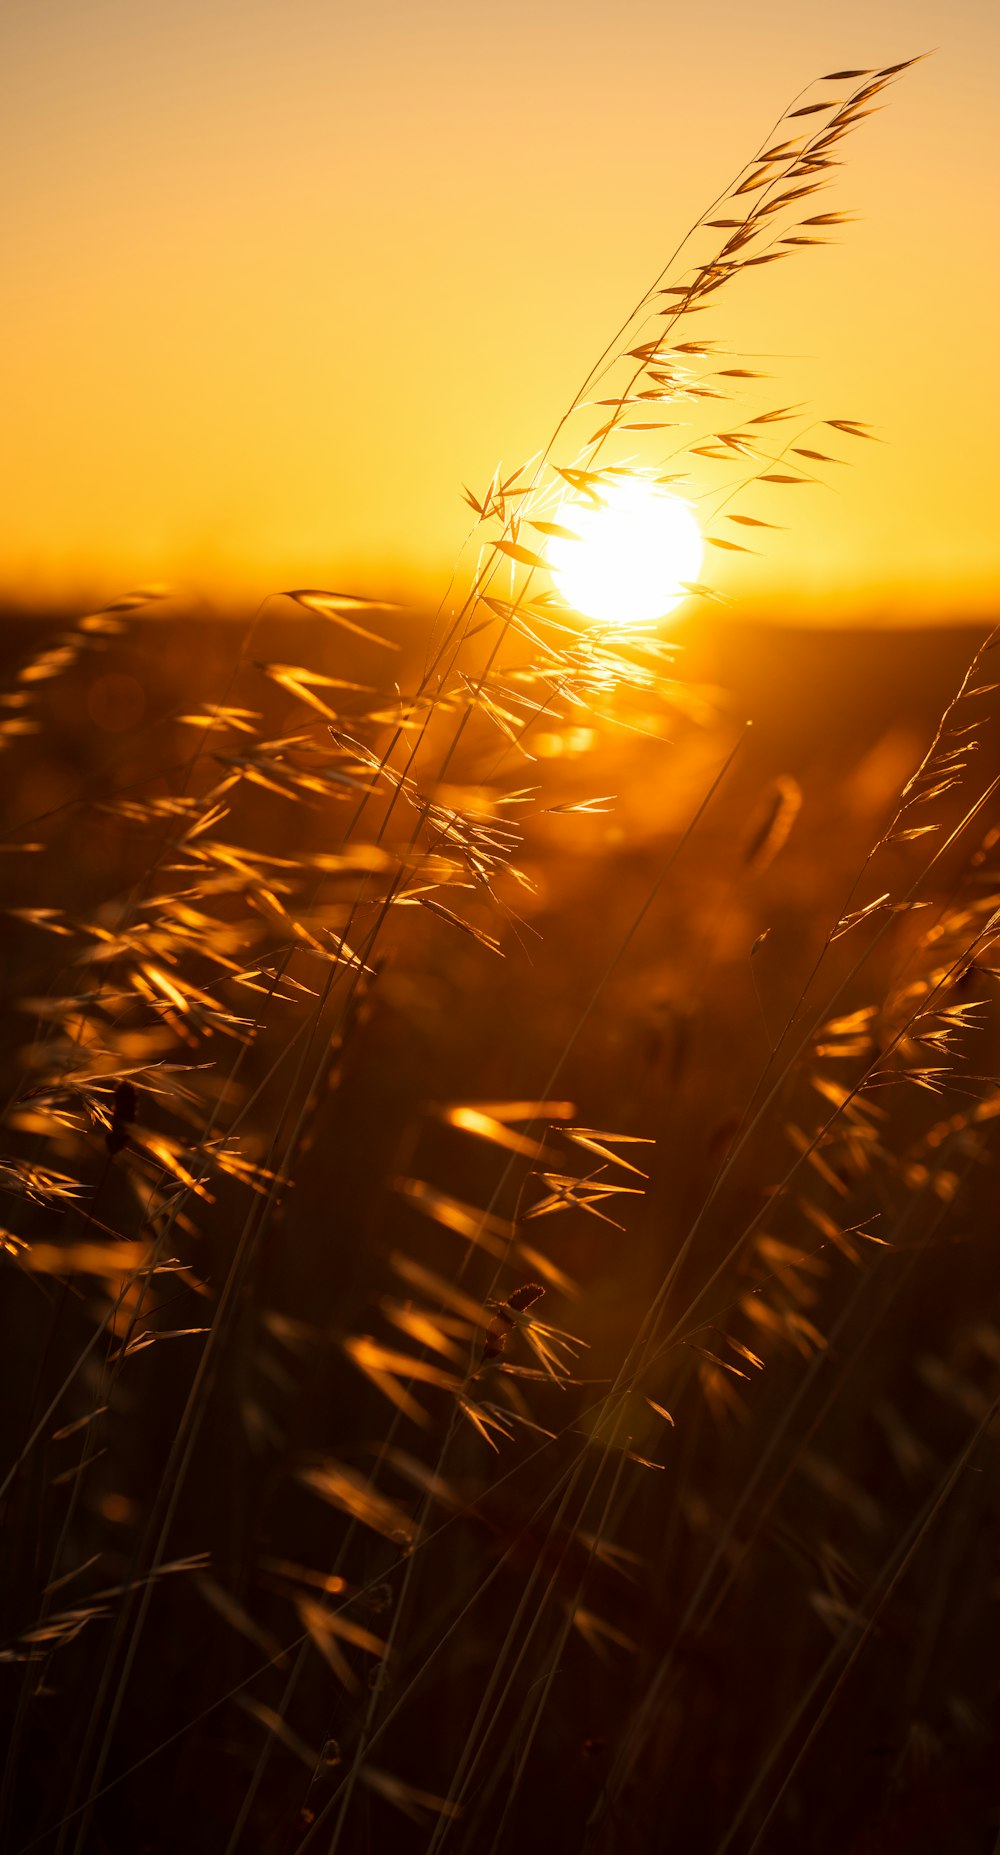 campo de trigo marrom durante o pôr do sol